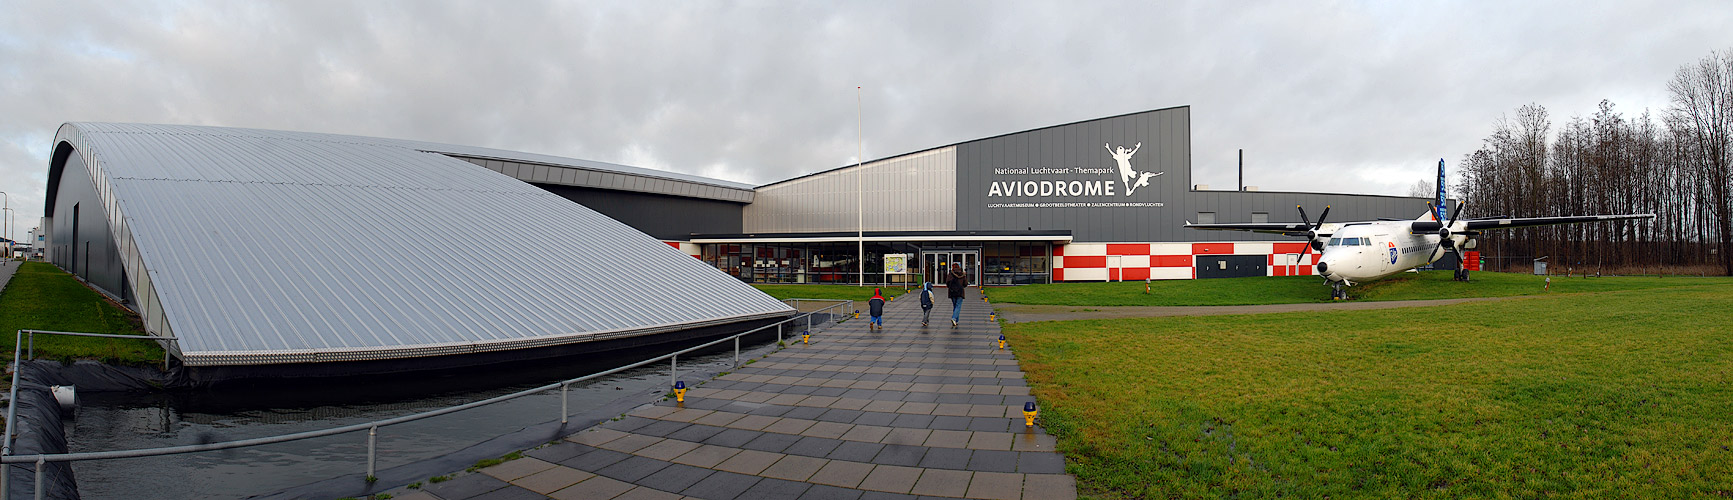 Aviodrome - Nationaal Luchtvaart Themapark